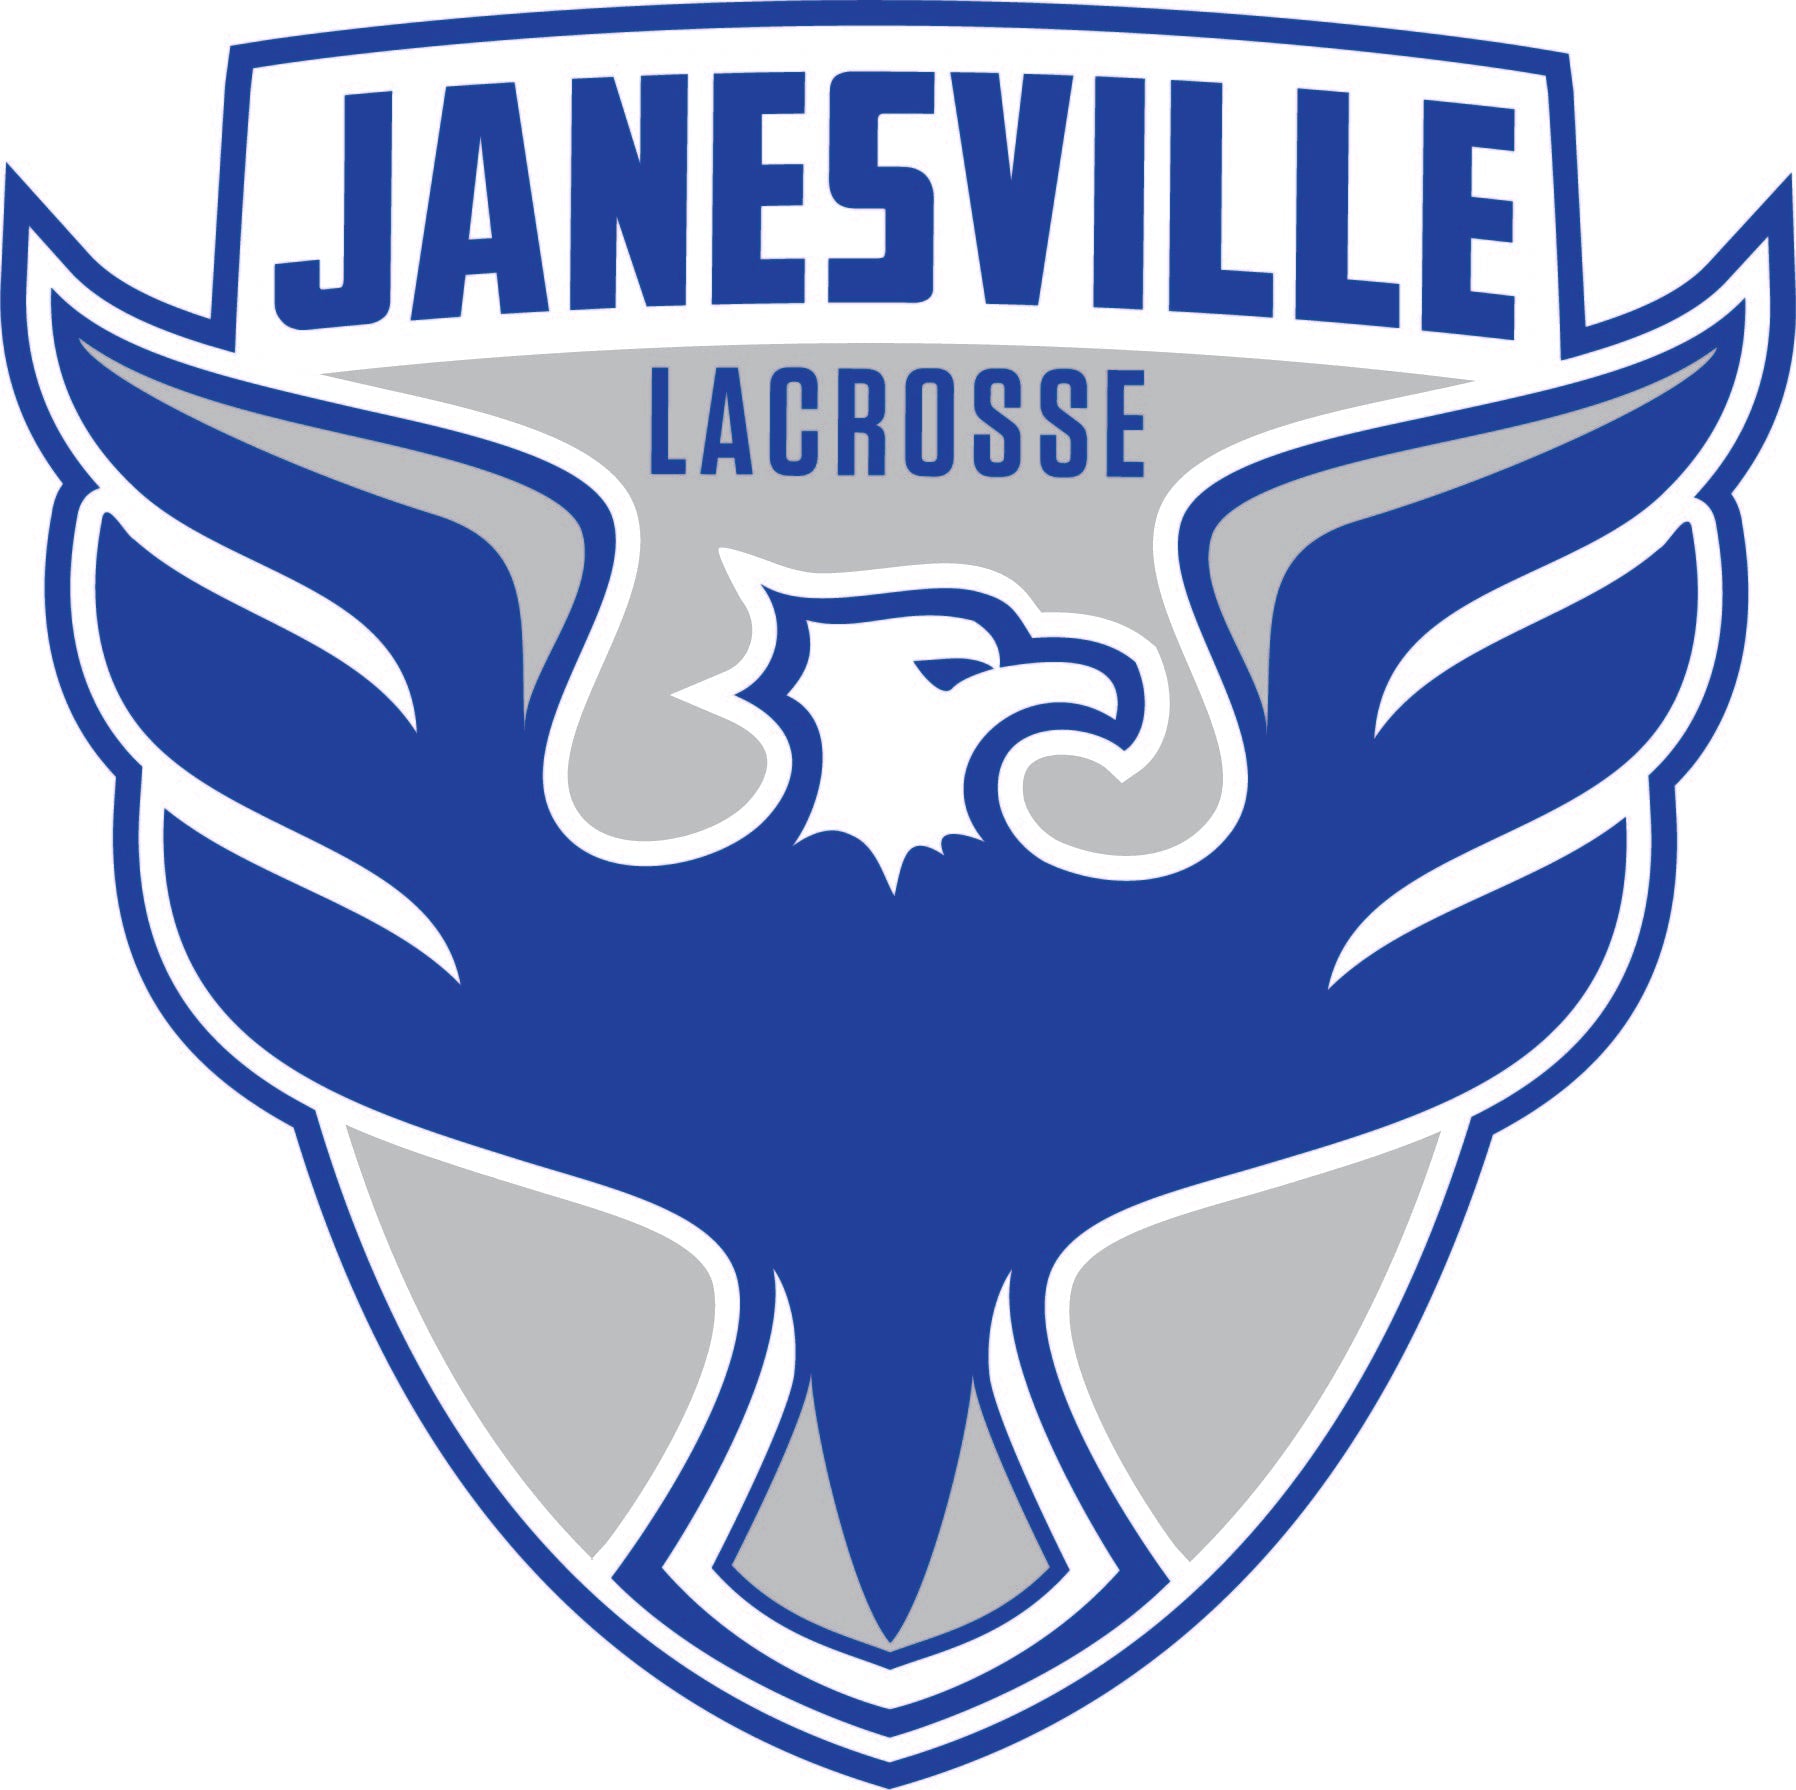 Janesville Lacrosse